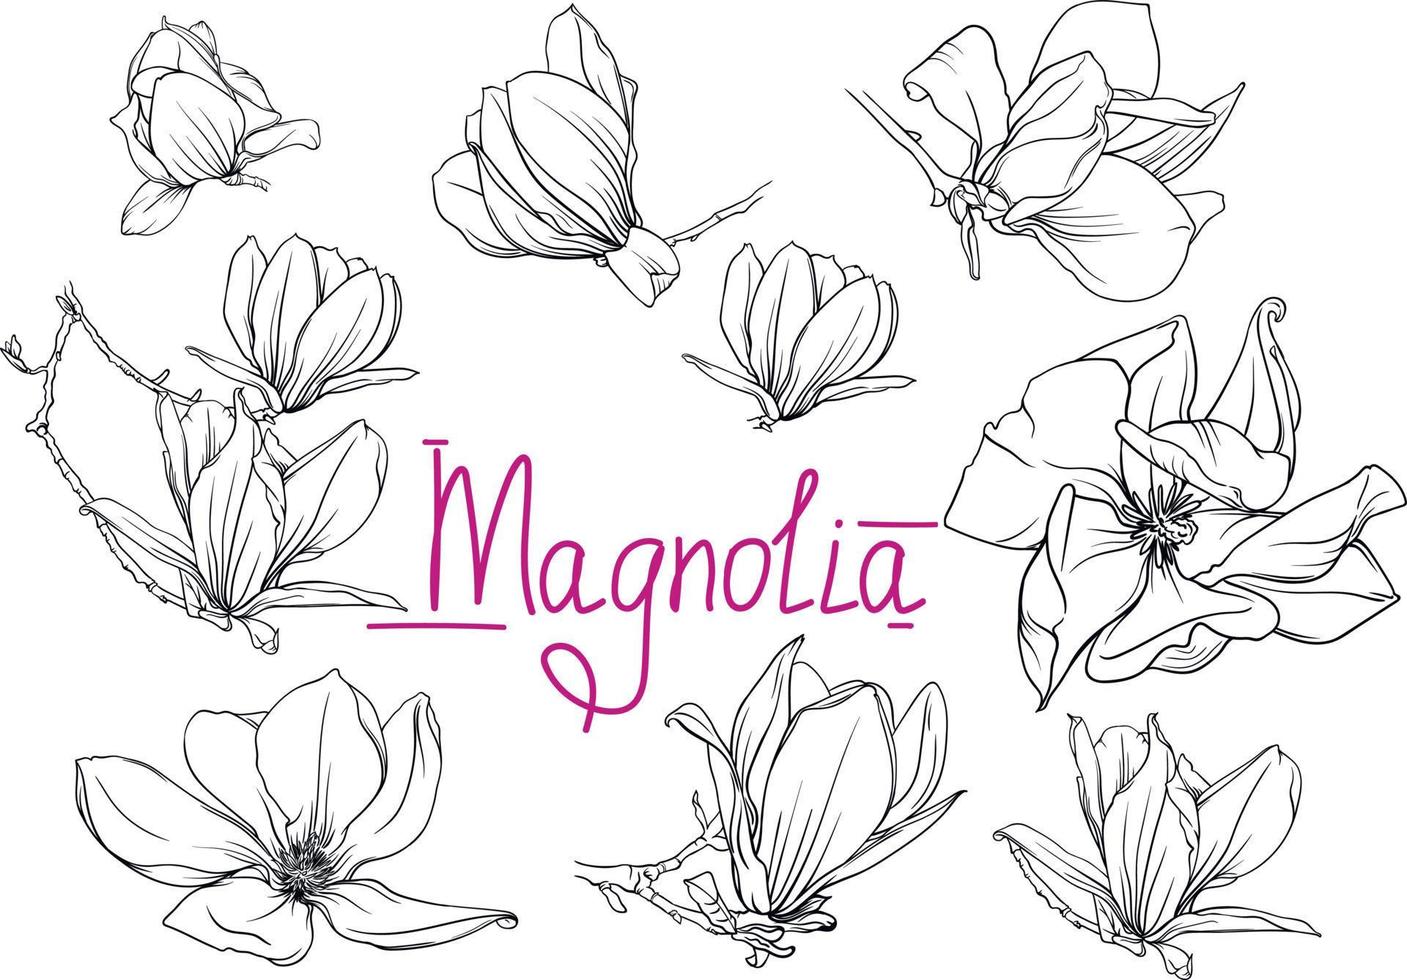 flores e ramos monocromáticos de magnólia desenhados à mão. contorno de magnólia, ilustração em vetor preto e branco de flores e ramos de magnólia